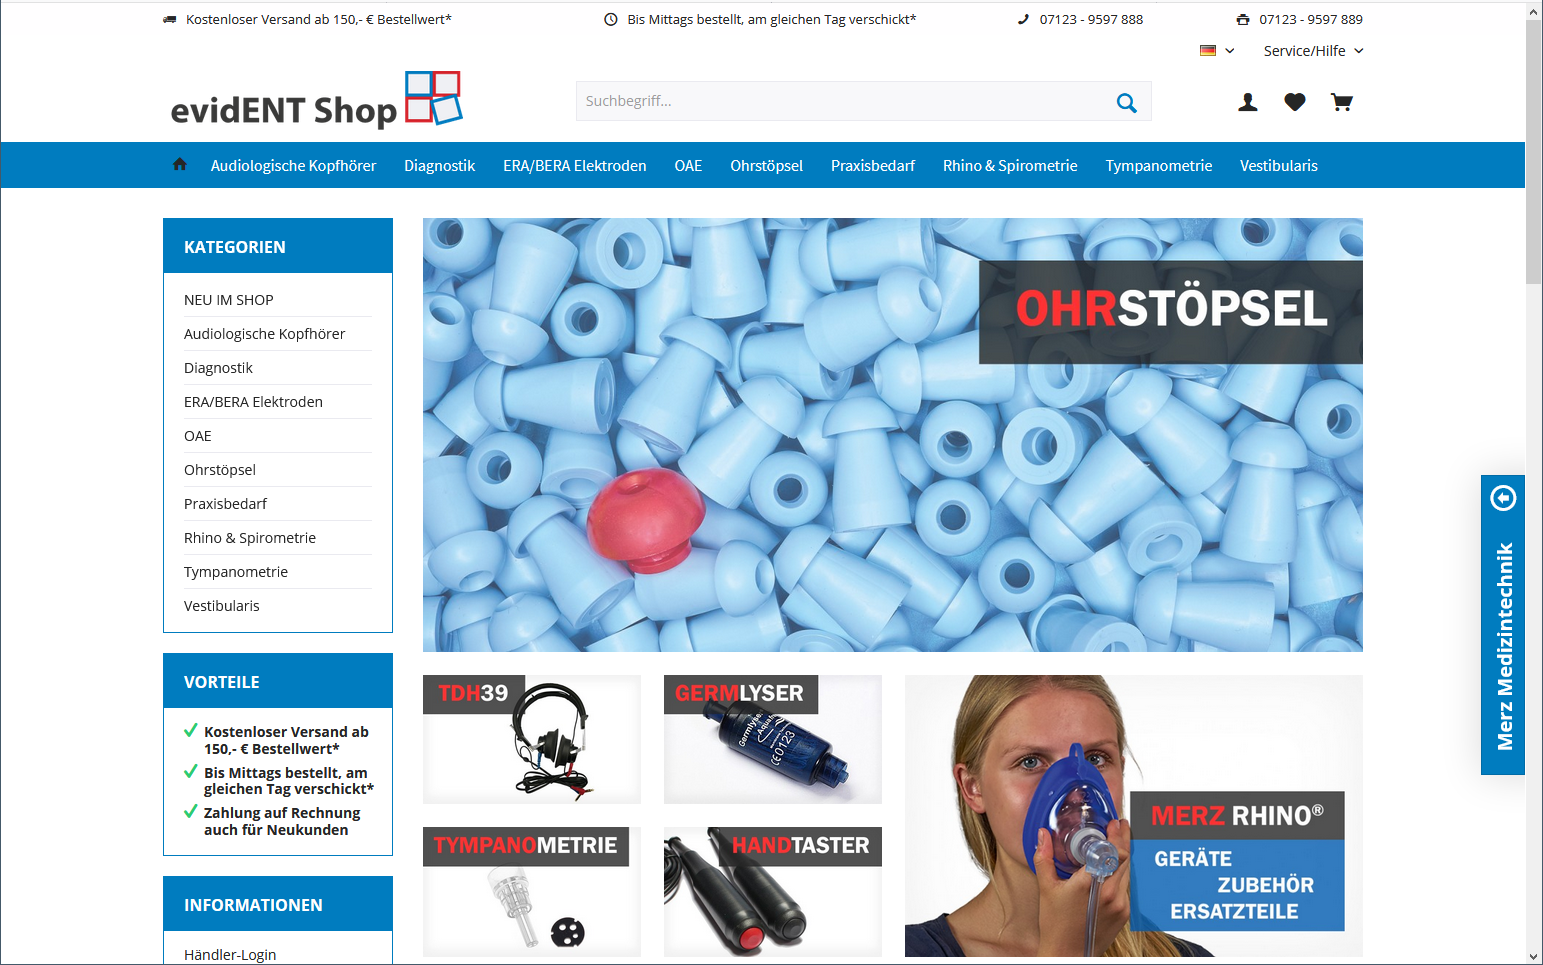 evidENT Shop - Verbrauchsmaterial und Ersatzteile für die HNO-Diagnostik